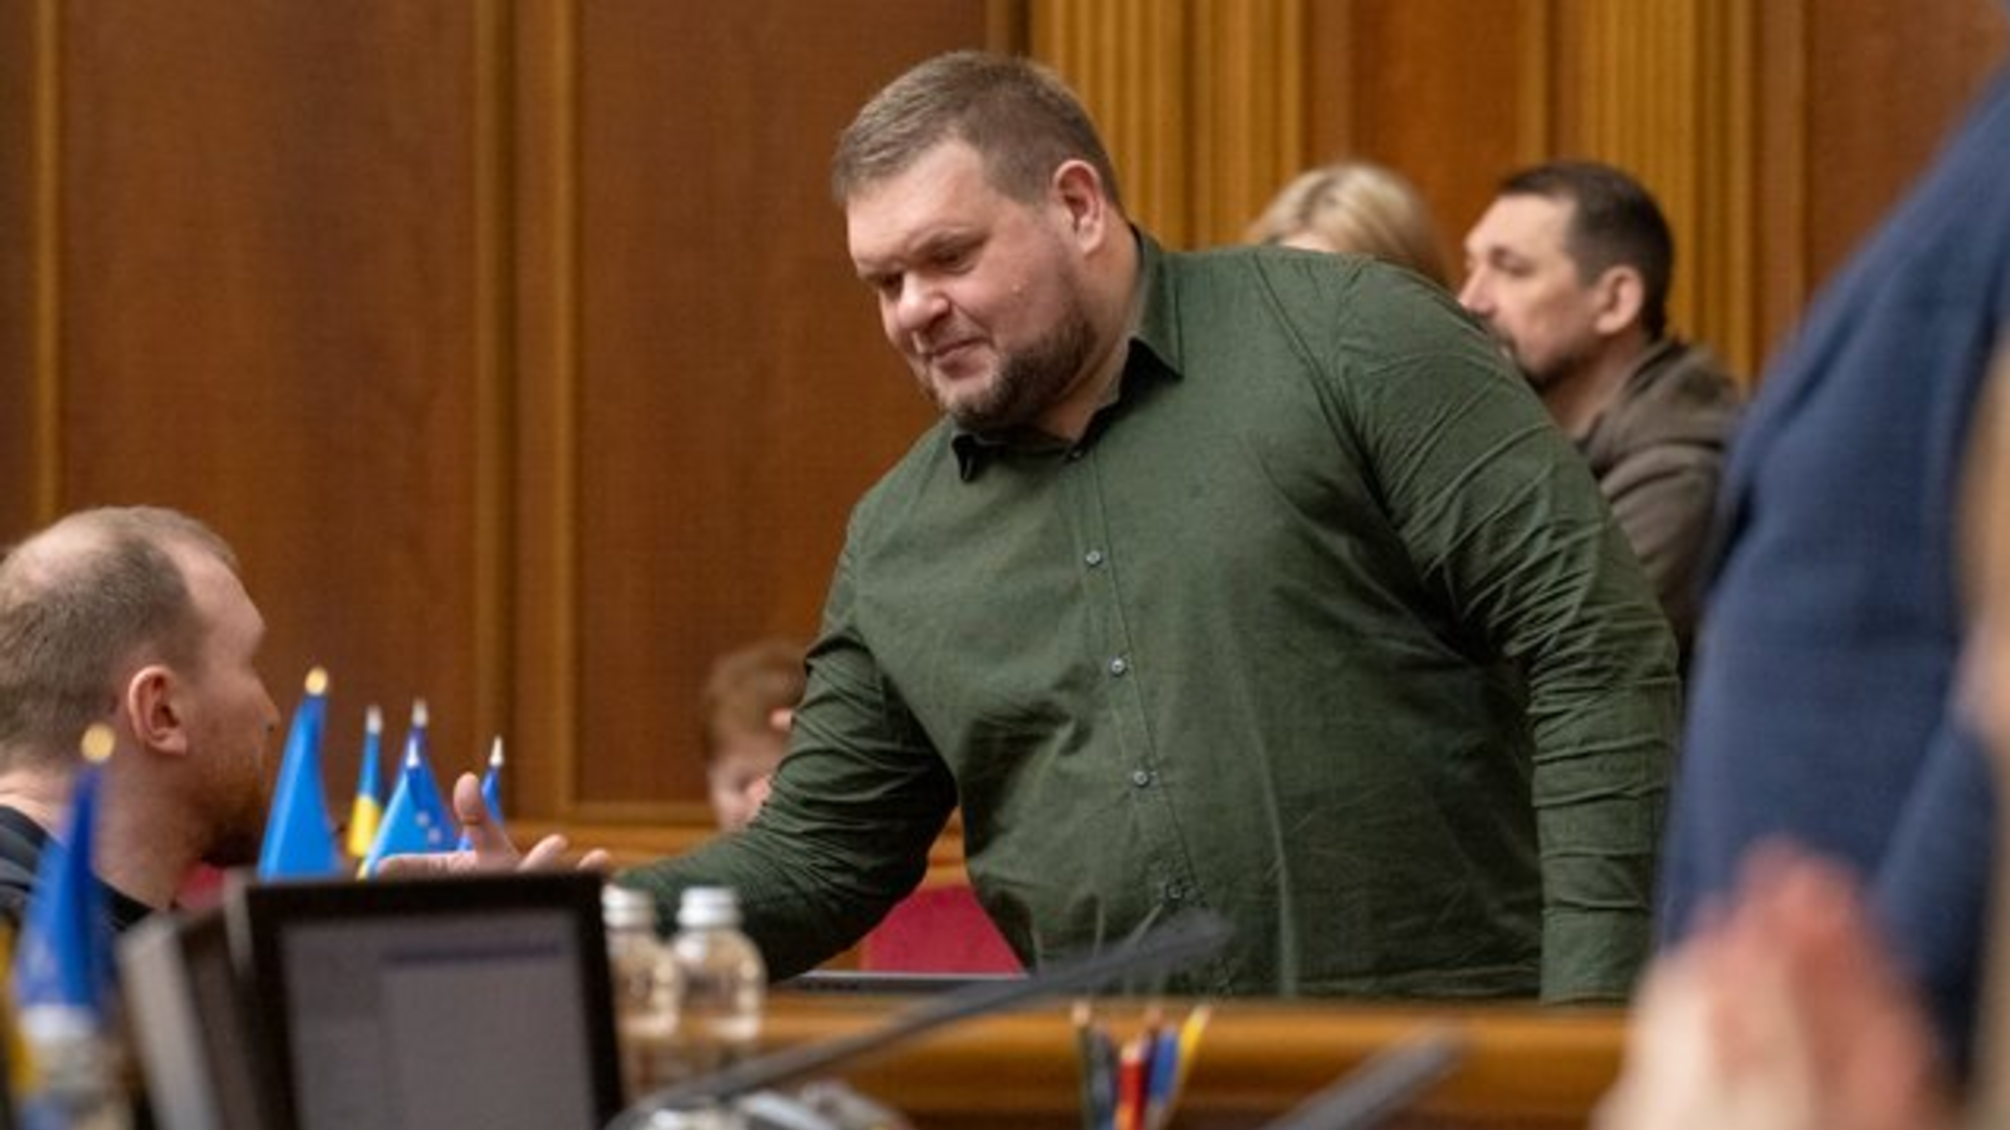 12 млн грн залога: ВАКС избрал меру пресечения народному депутату Клочко, - СМИ